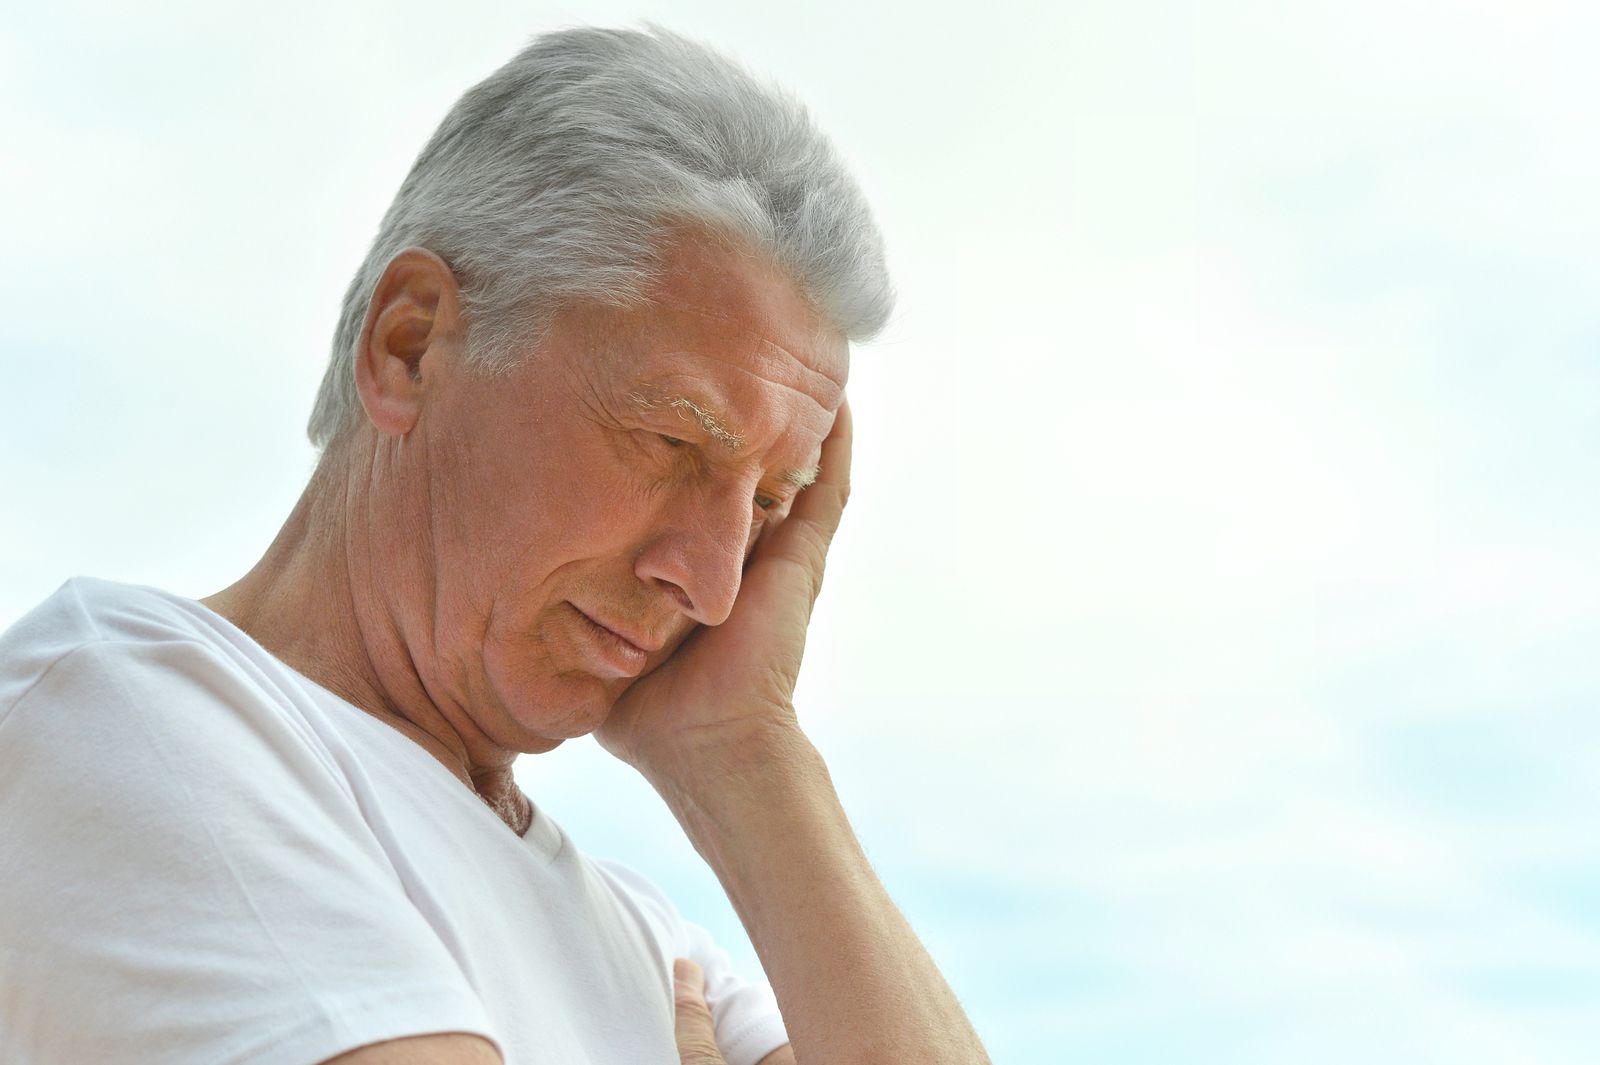 Signos del estrés en la piel de las personas mayores